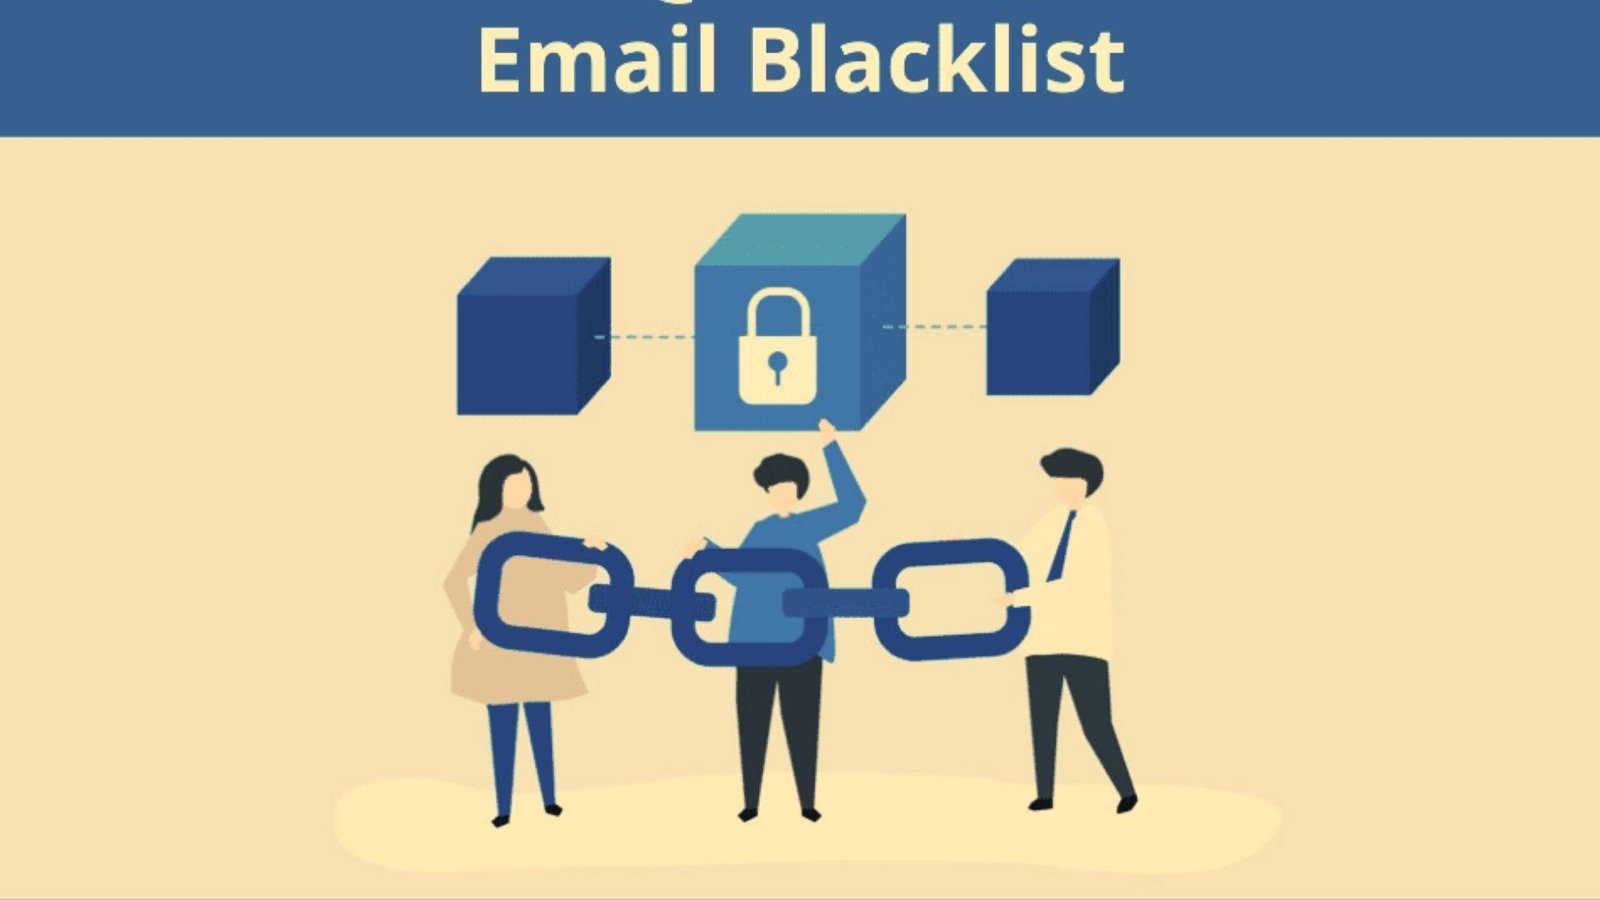 Email blacklist